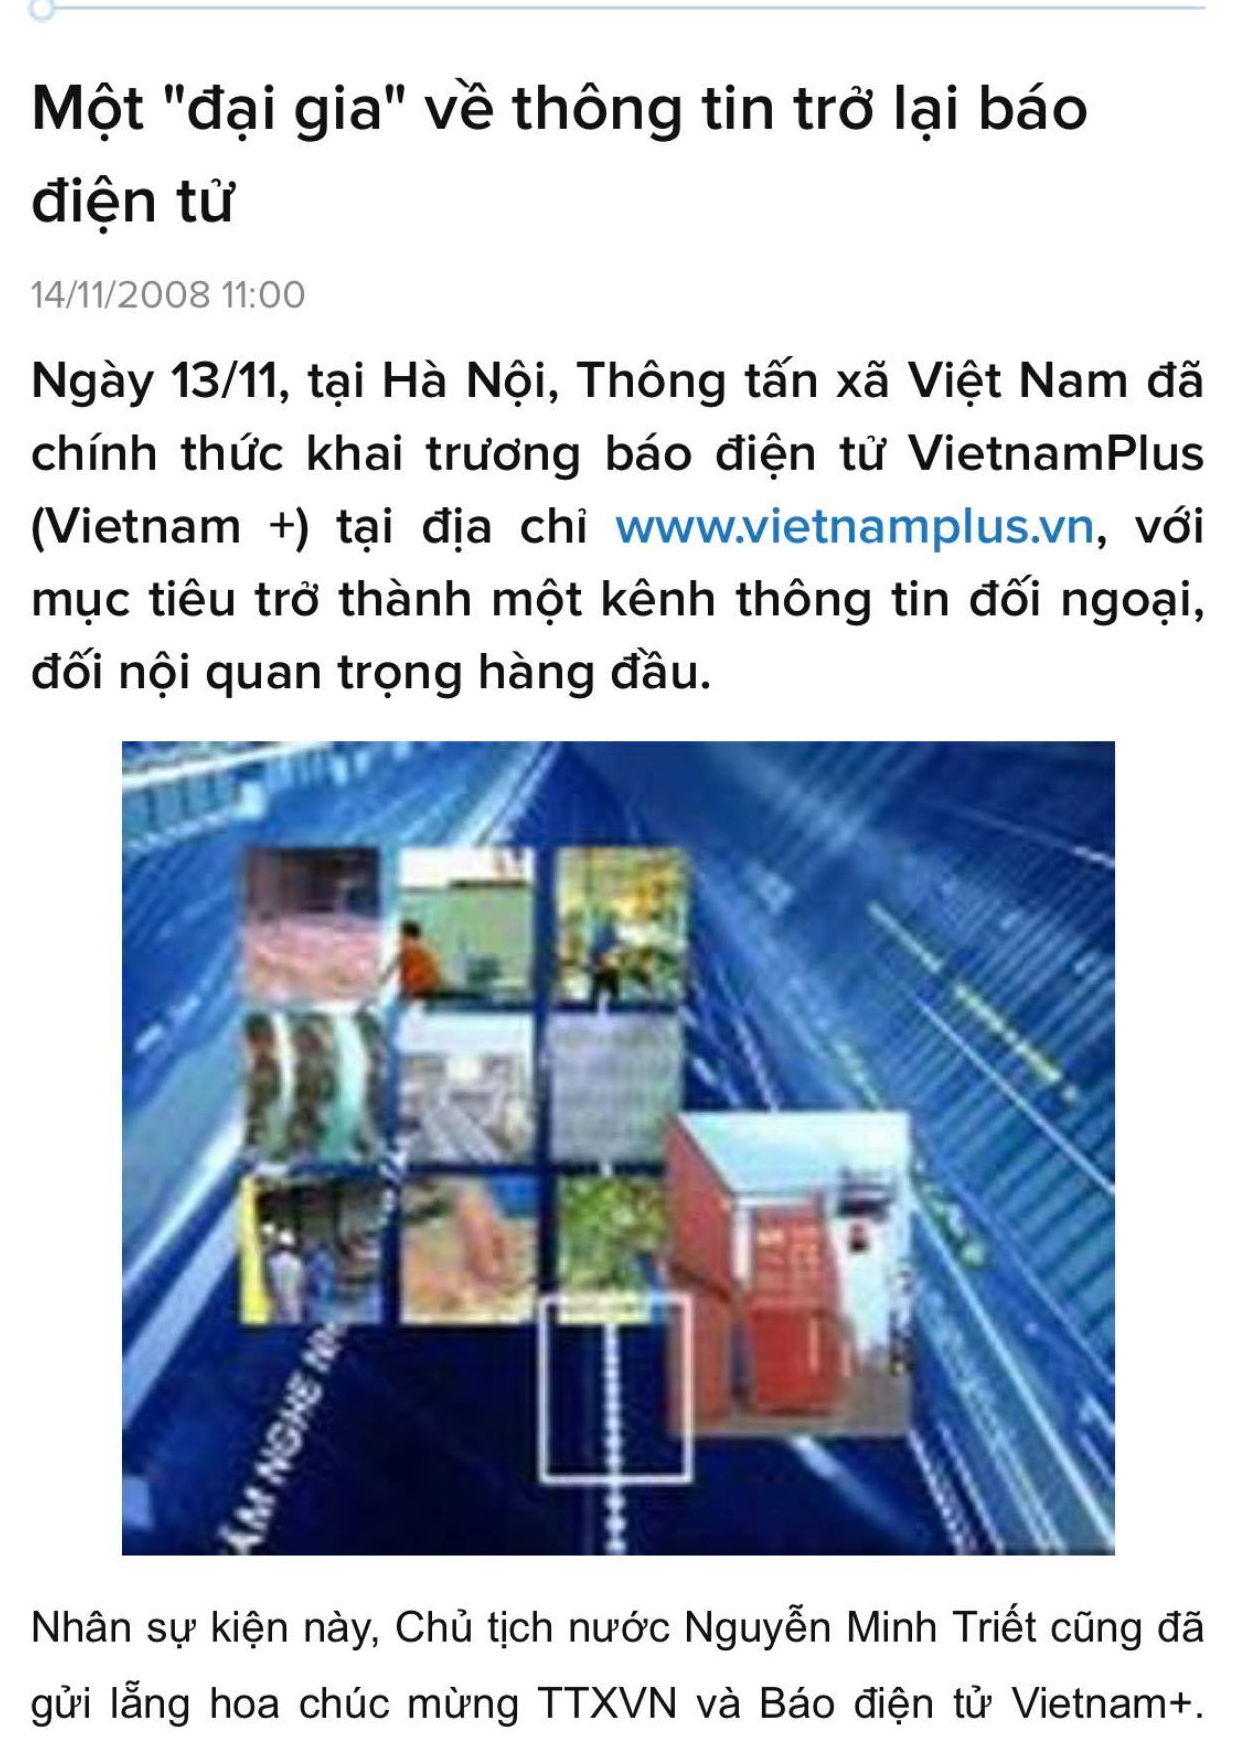 Một bài báo nói về sự ra mắt của VietnamPlus vào năm 2008.